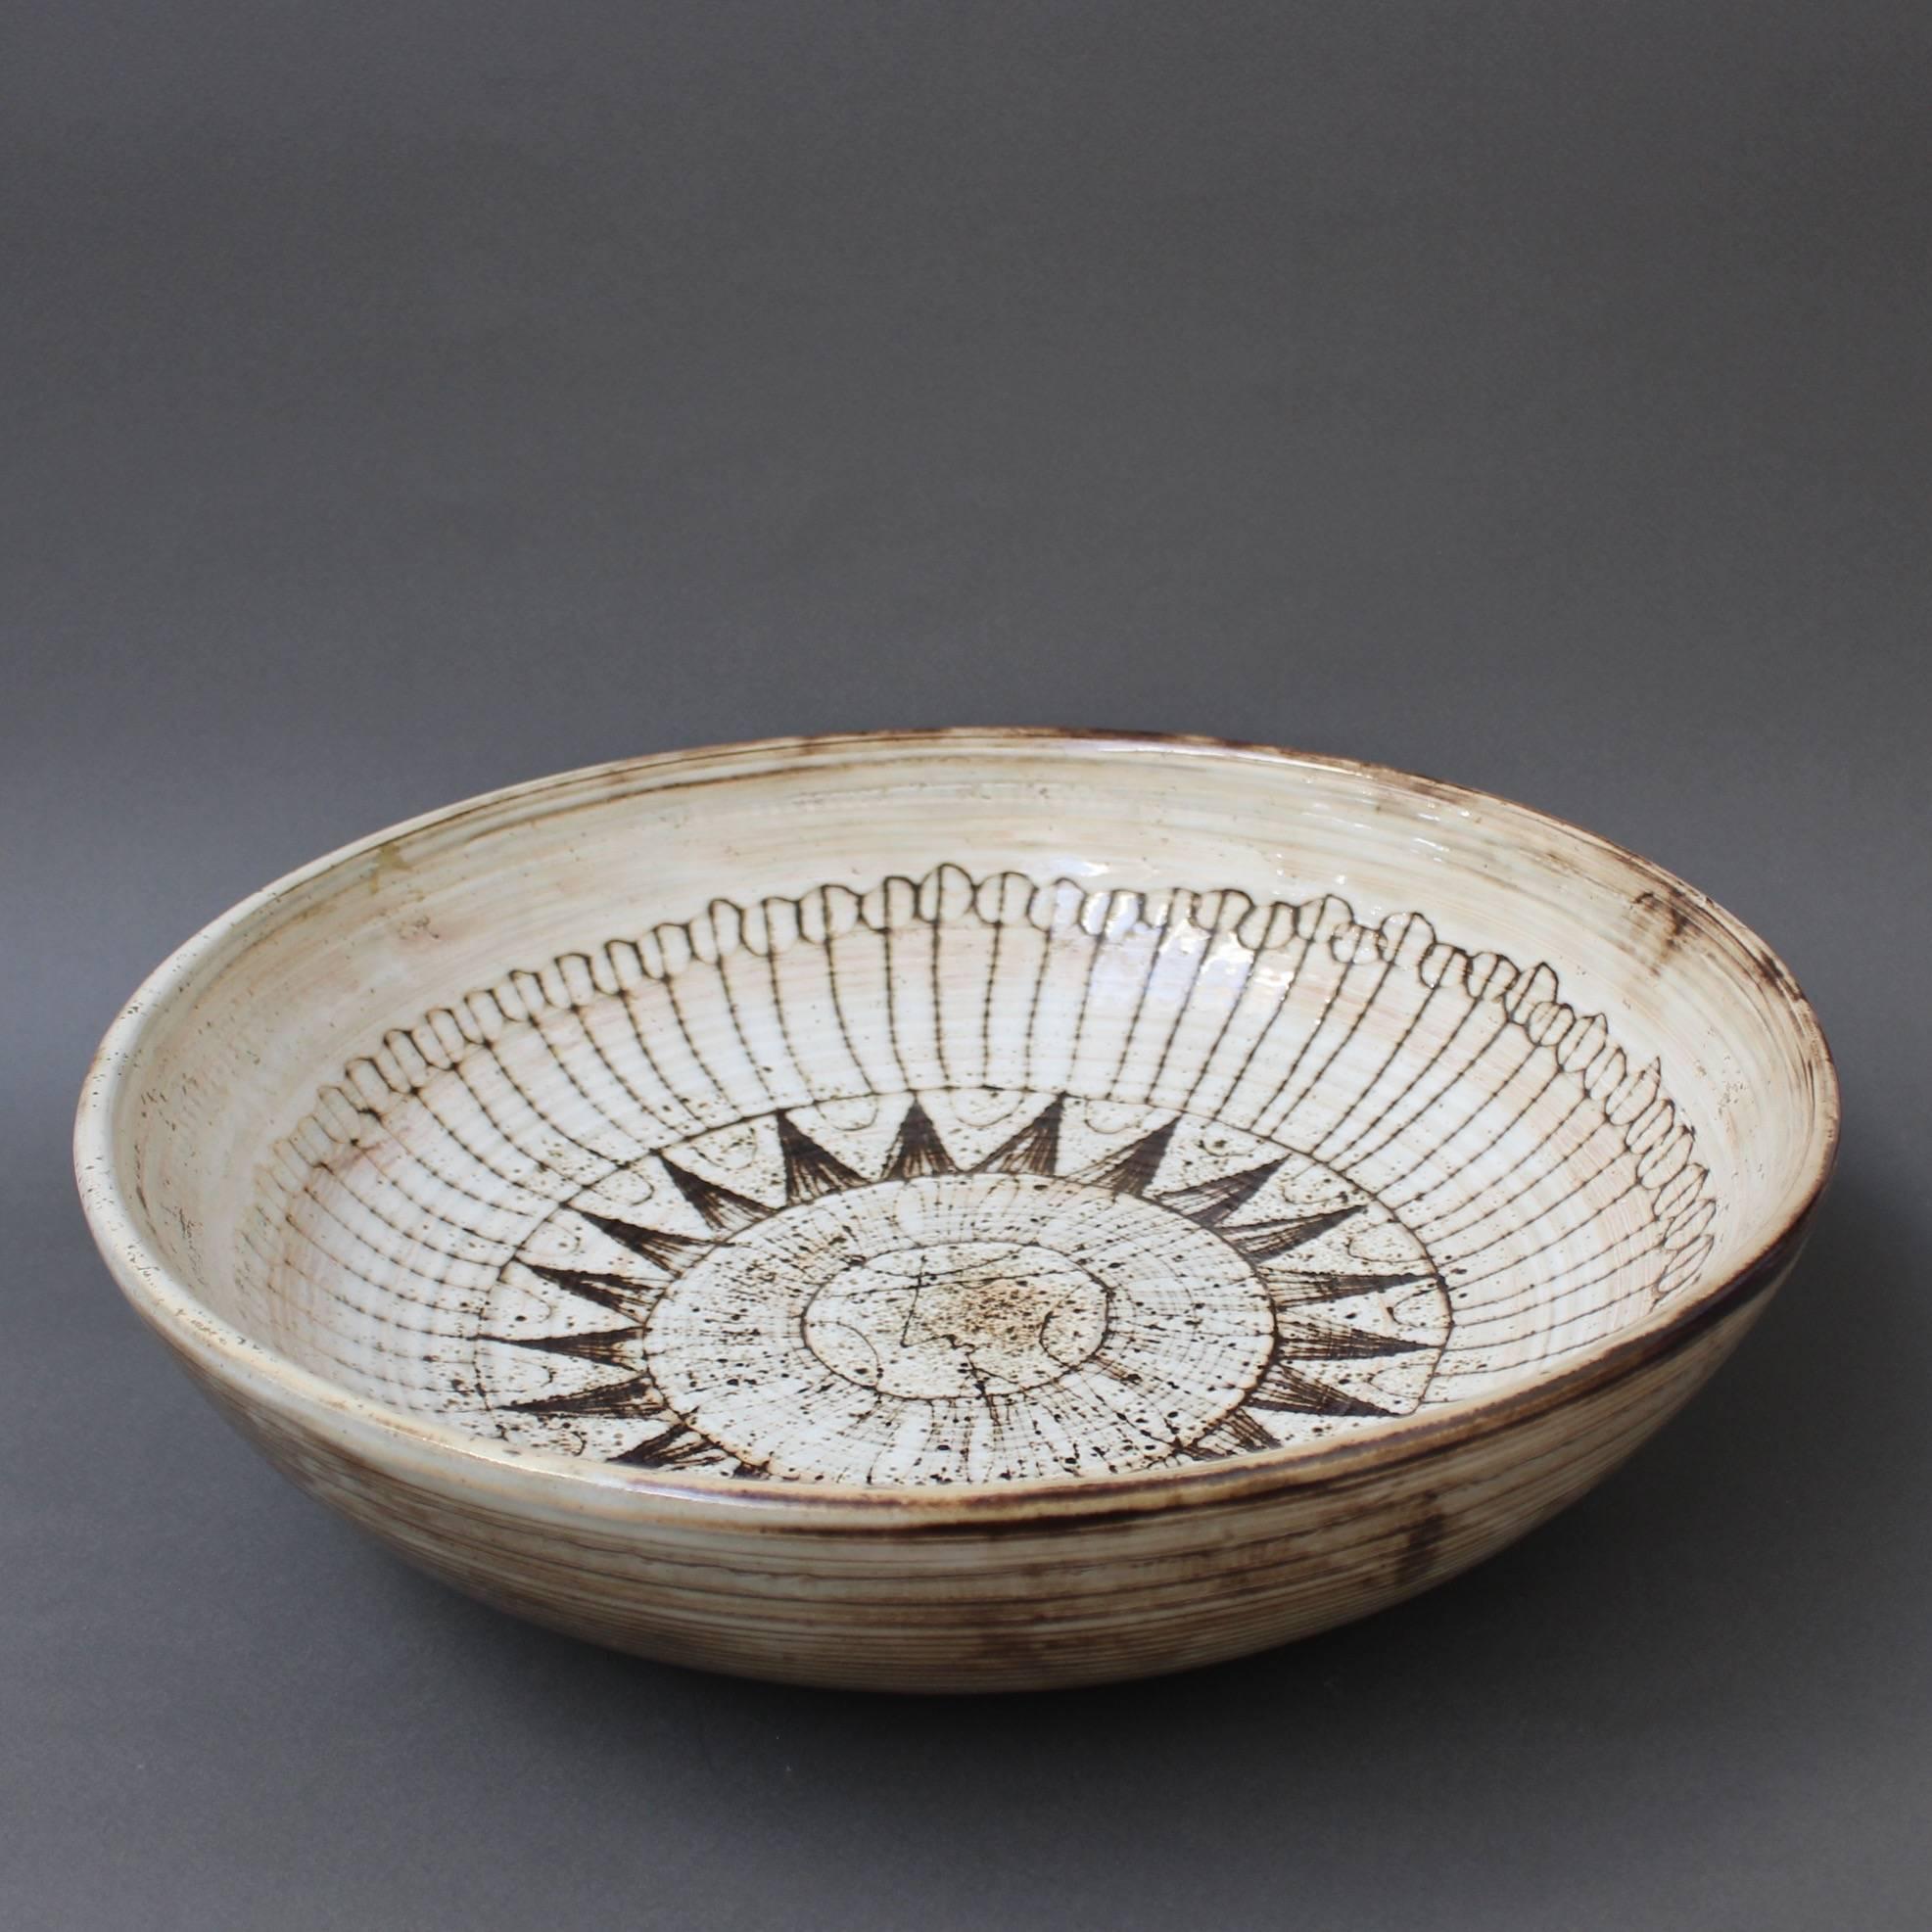 Ceramic Large Decorative Bowl with Sunburst Motif by Jacques Pouchain-Atelier Dieulefit